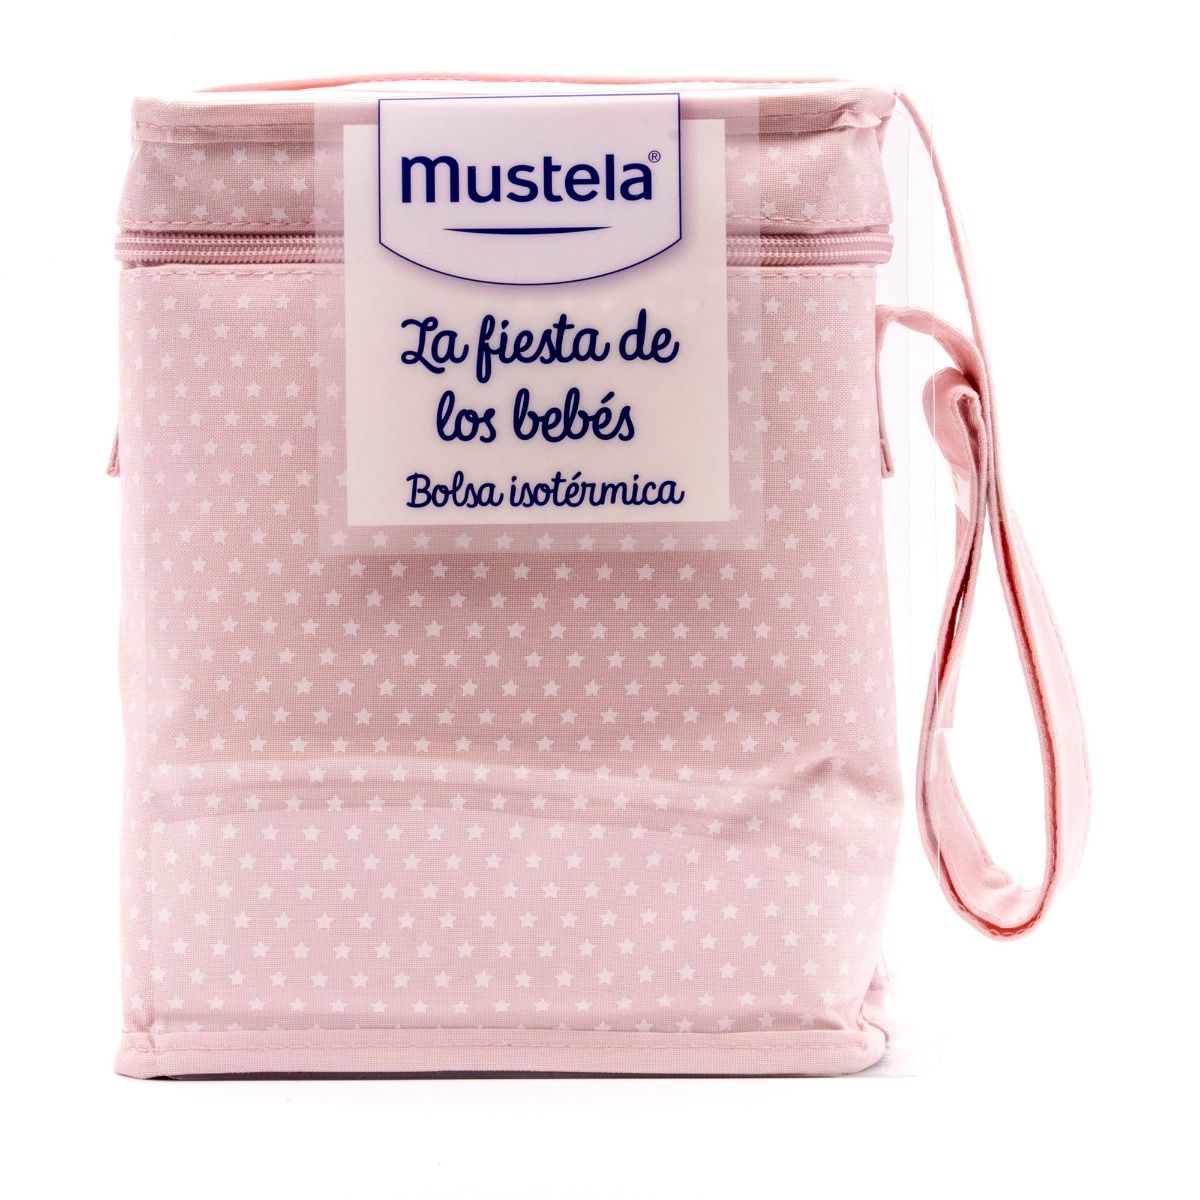 Mustela Fiesta de los bebés con bolsa isotérmica Rosa